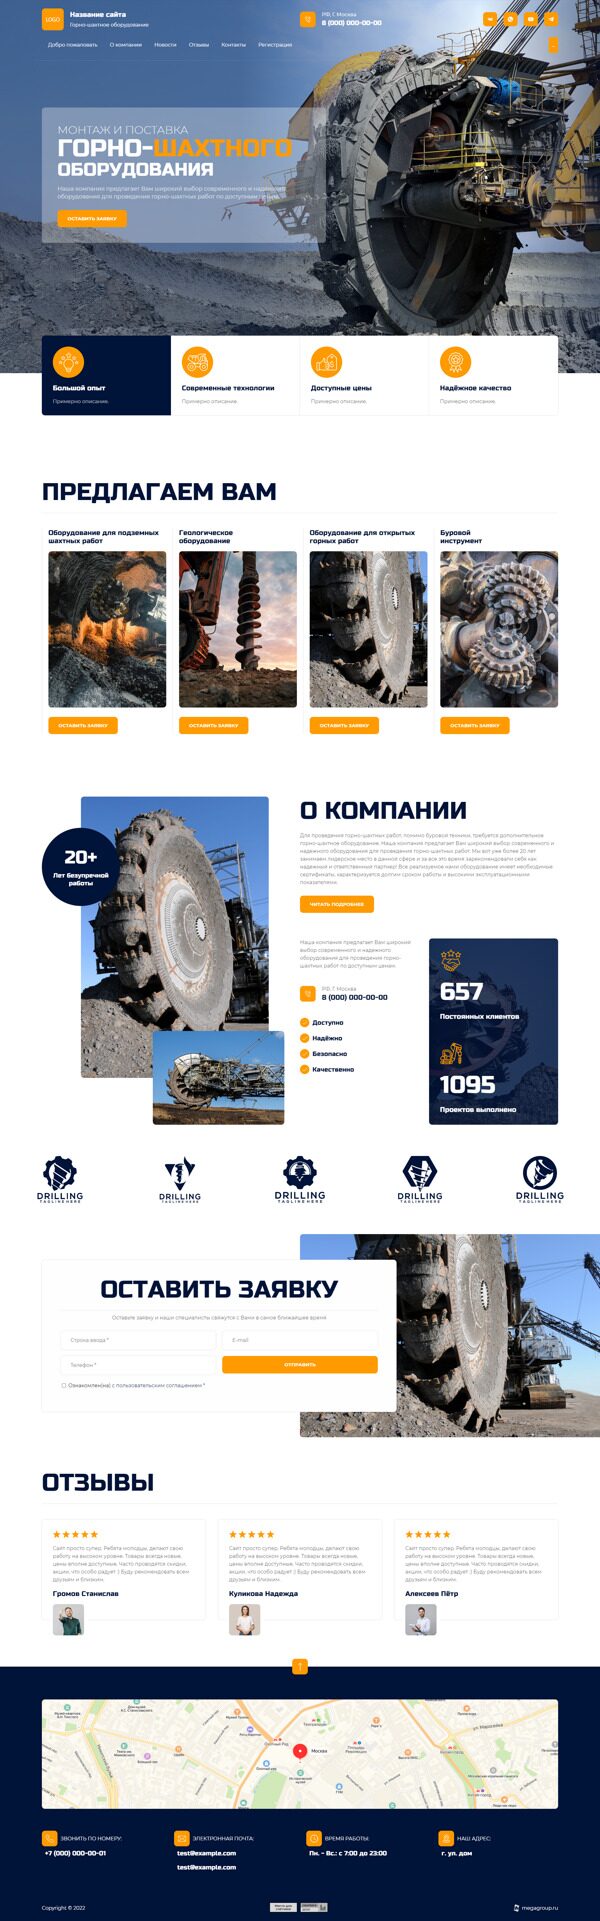 Готовый Сайт-Бизнес № 4366404 - Горно-шахтное оборудование (Десктопная версия)